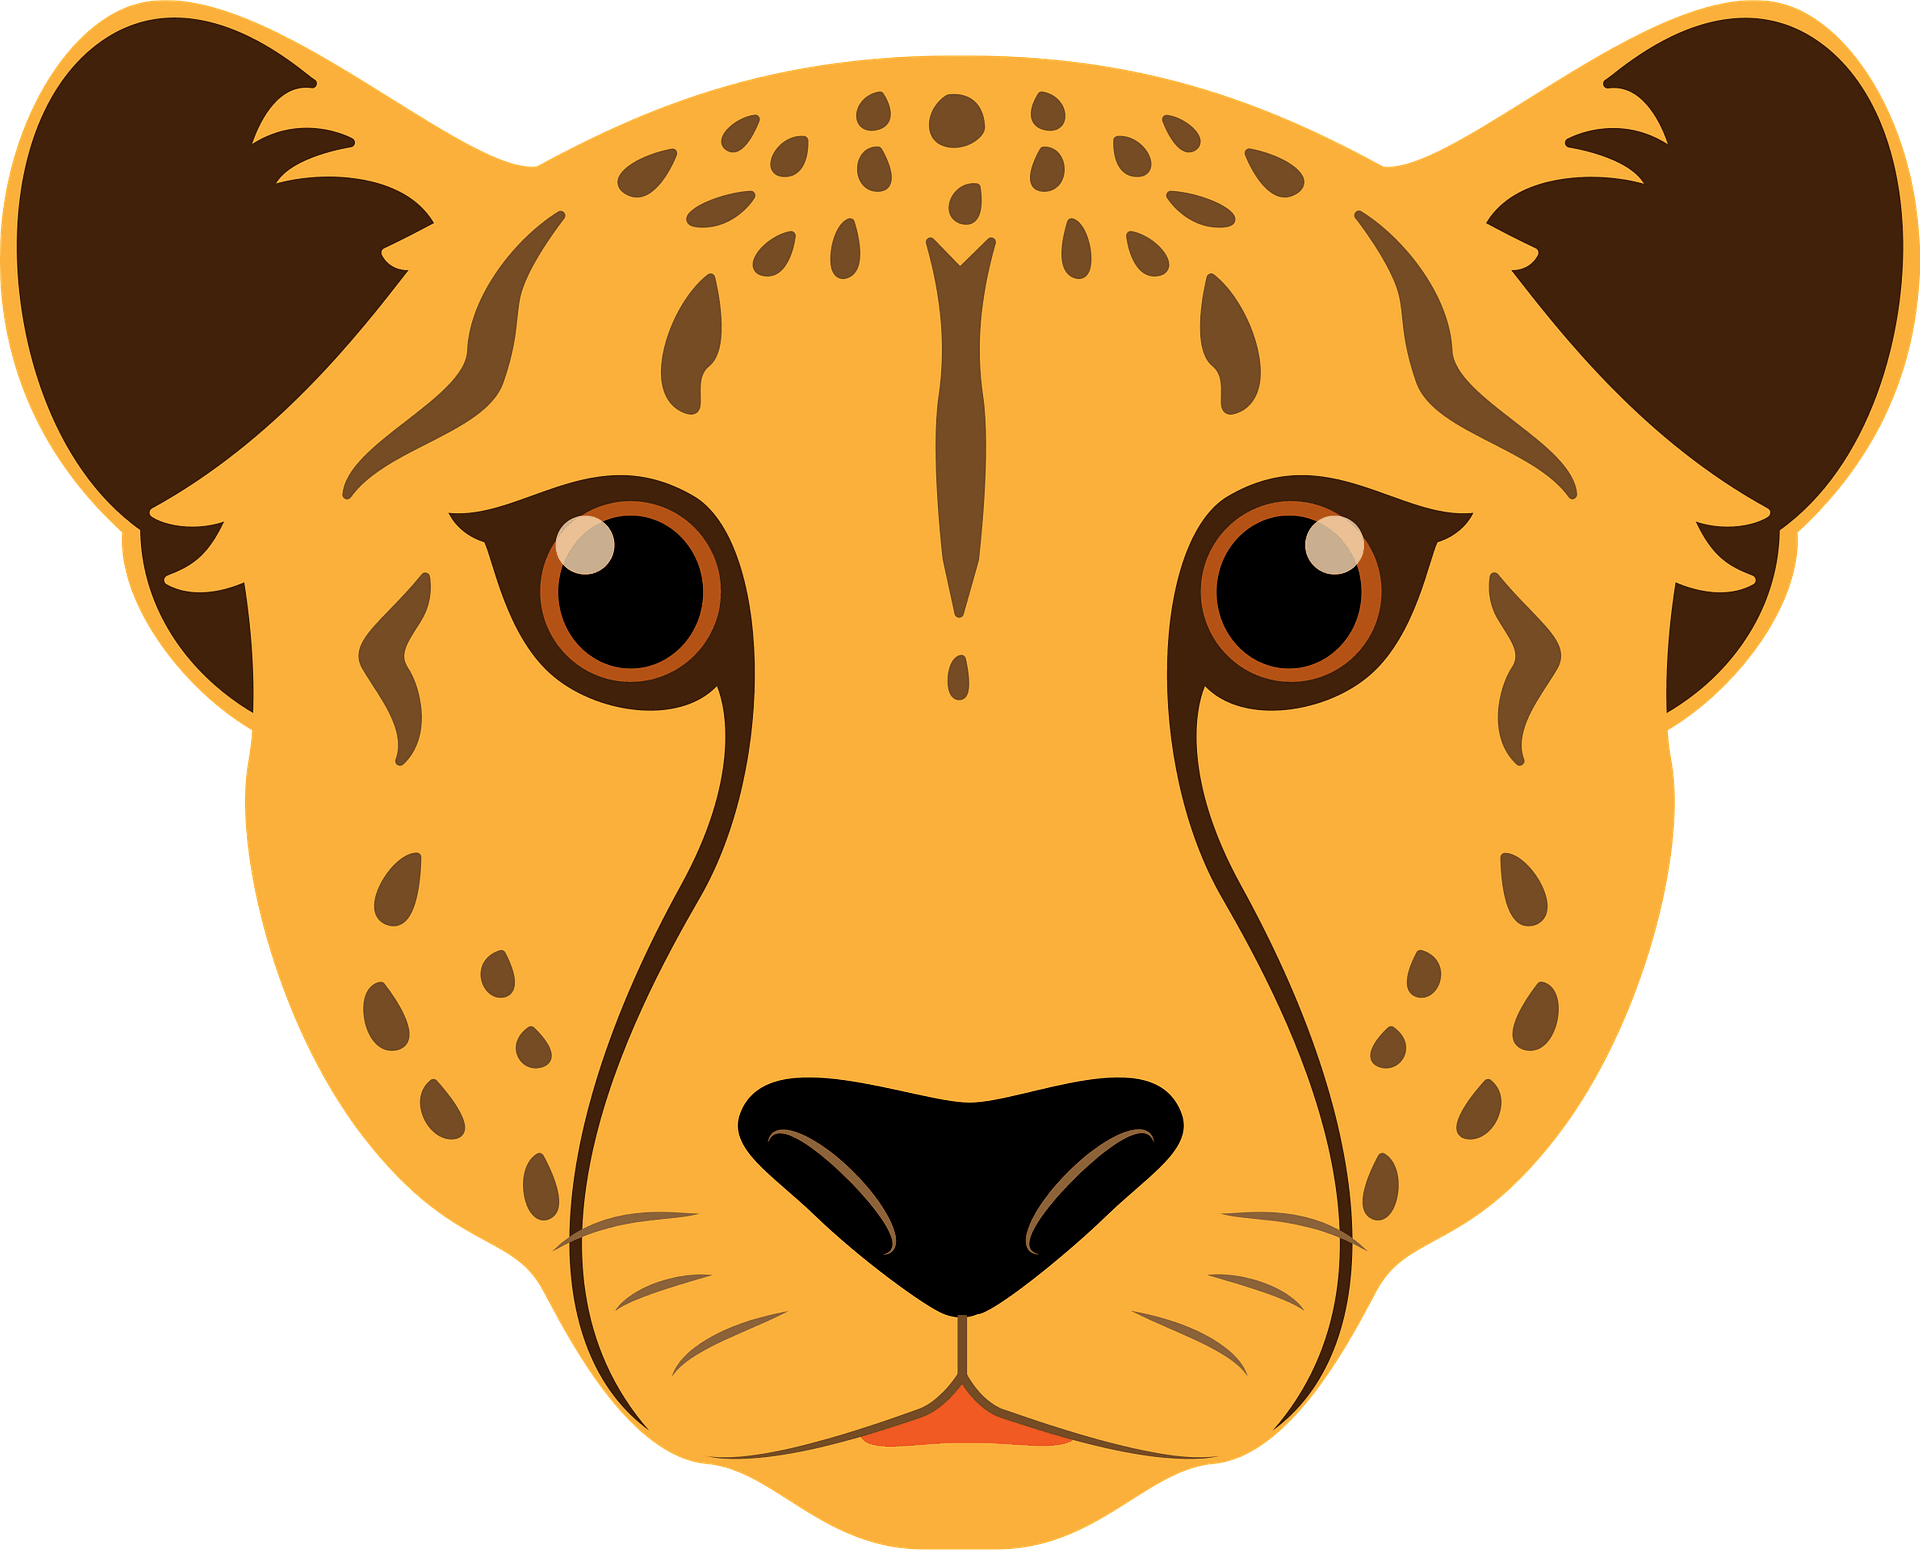 A Cute Cartoon Cheetah Running Royalty Free SVG, Cliparts, Vectors ...